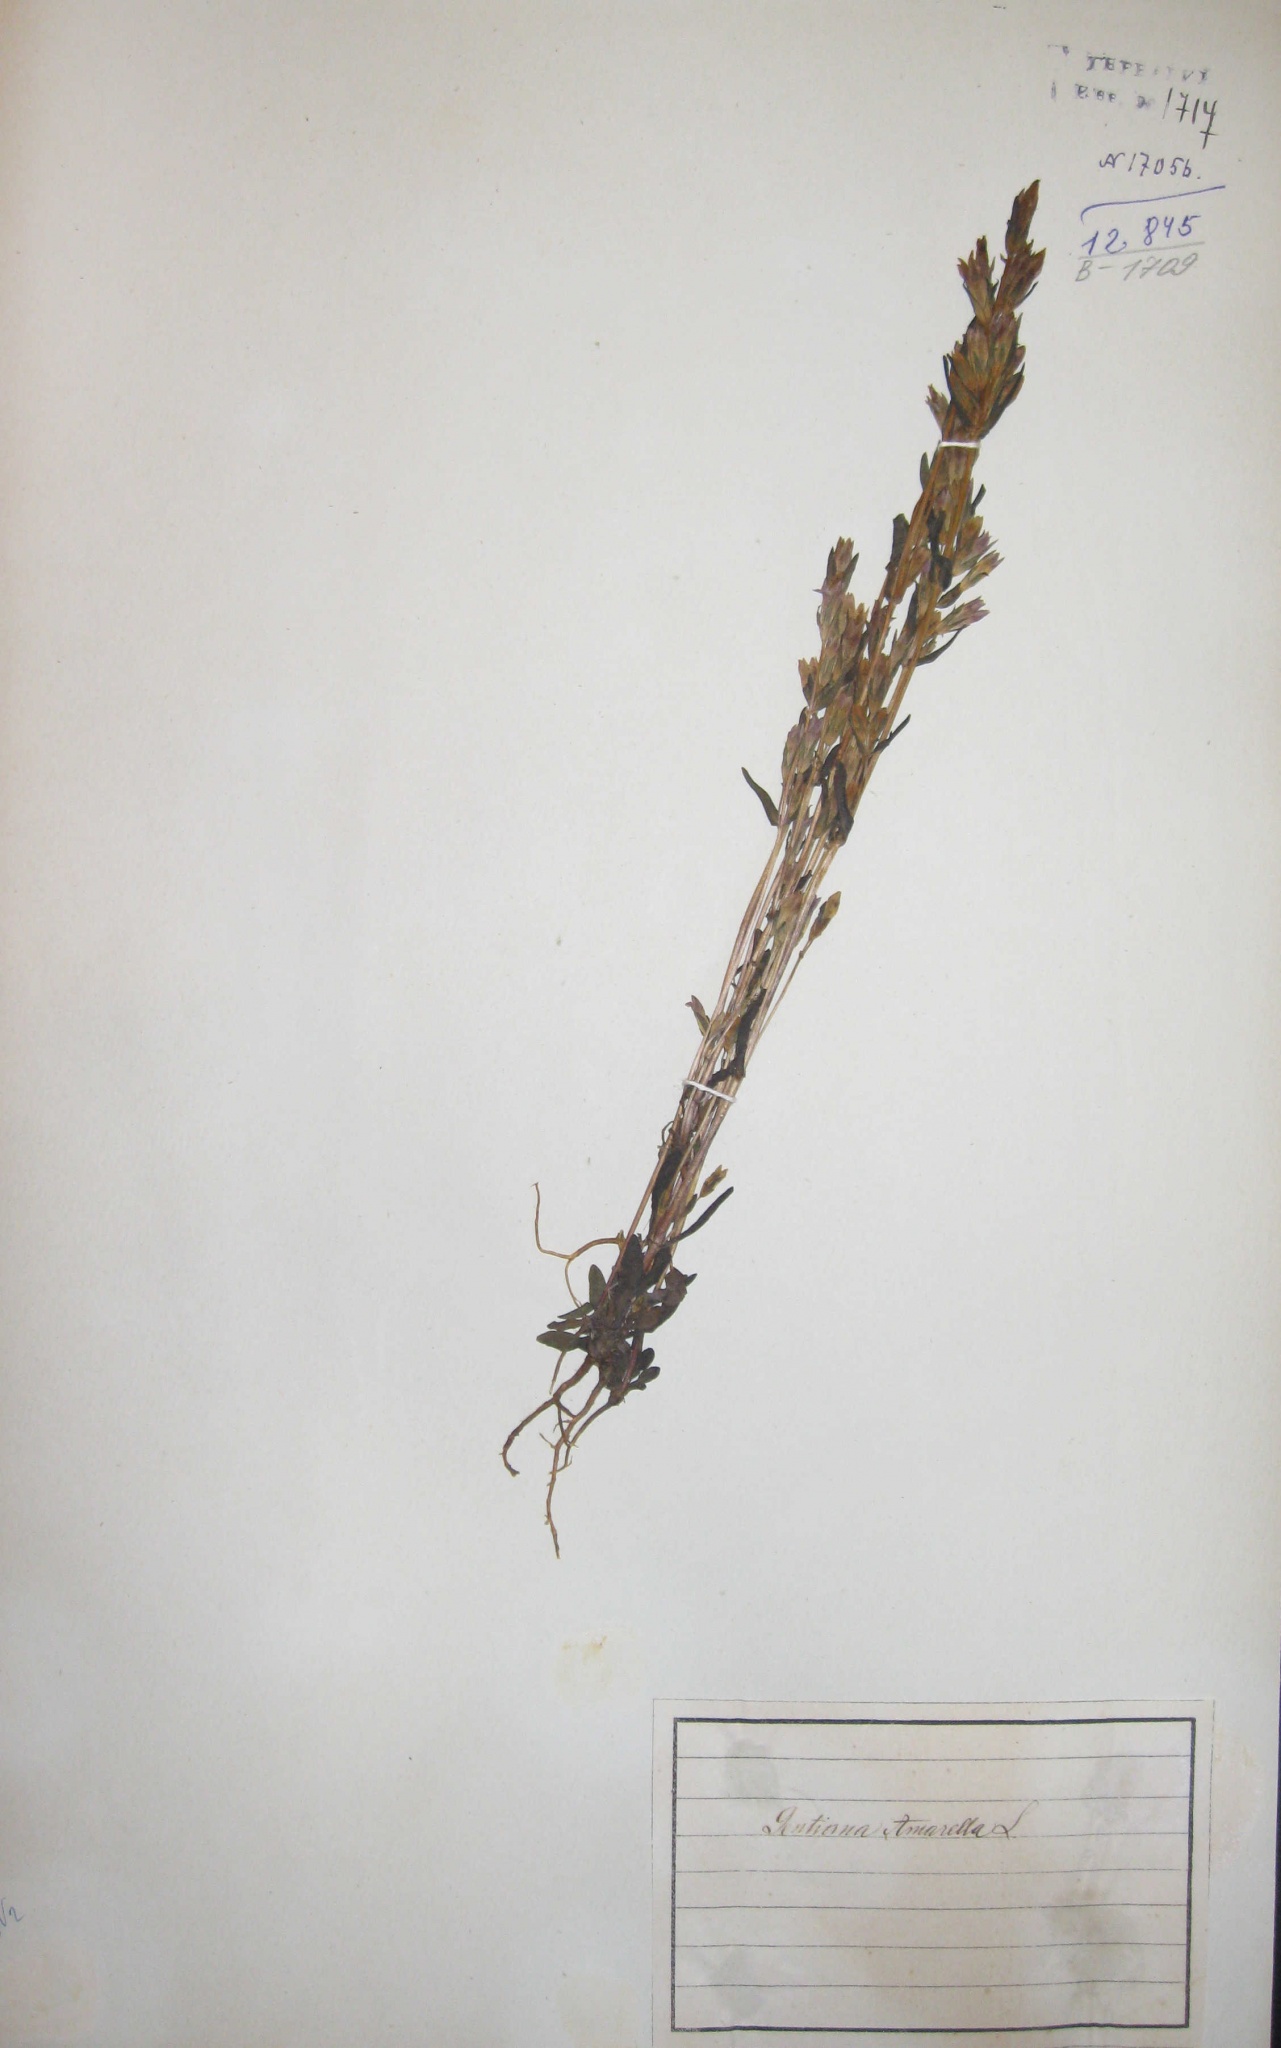 Горечавочка горьковатая (Gentianella amarella) — редкое лекарственное растение.